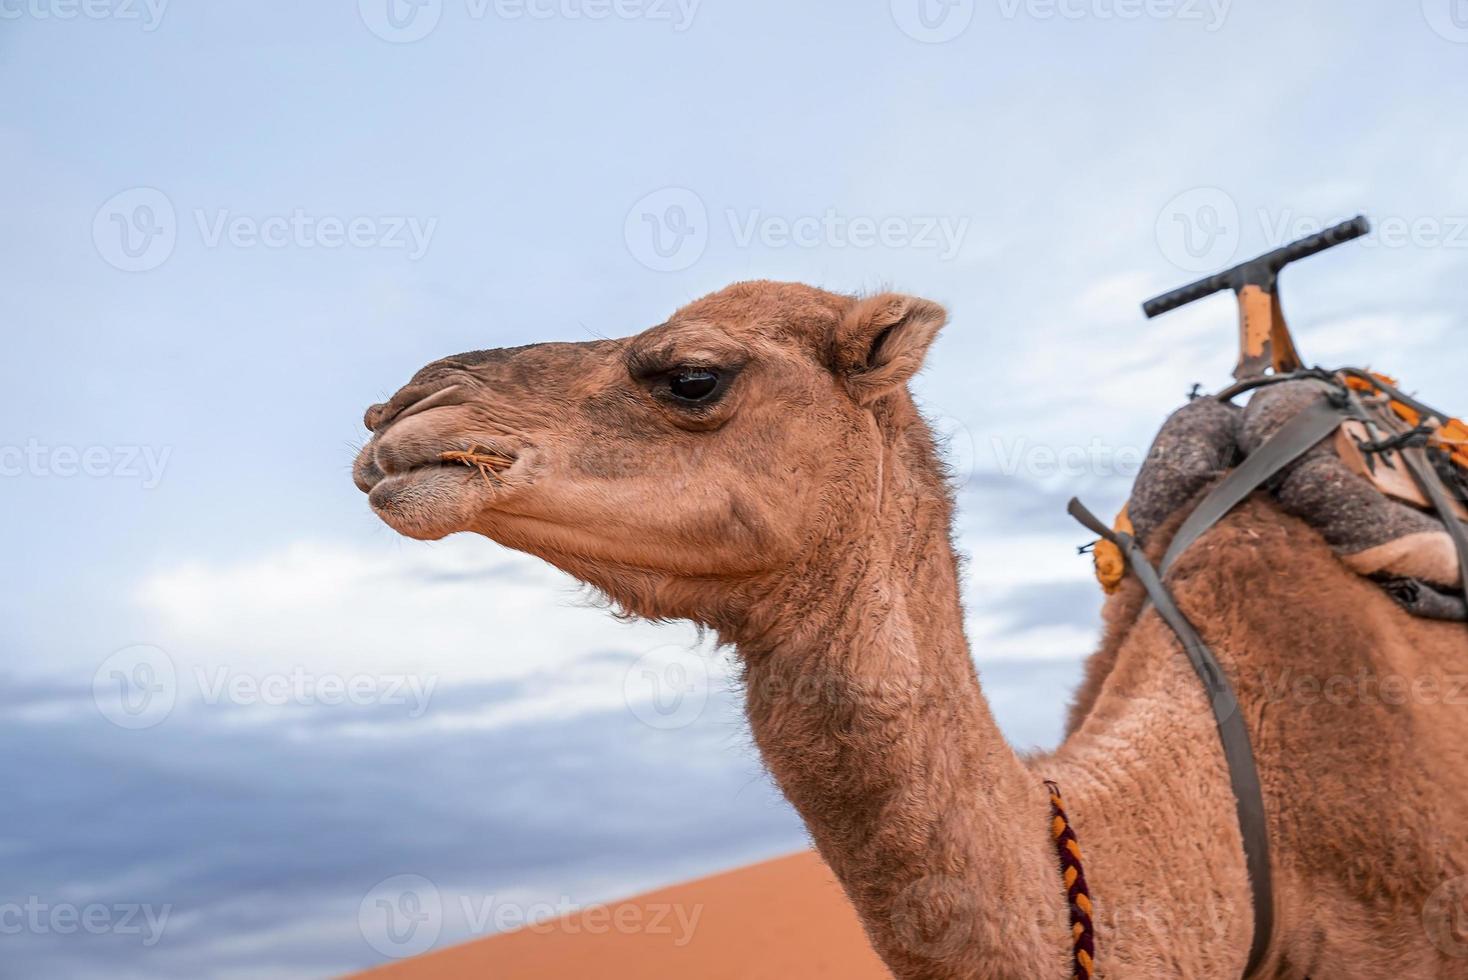 camelos marrons dromedários comendo grama no deserto contra céu nublado foto